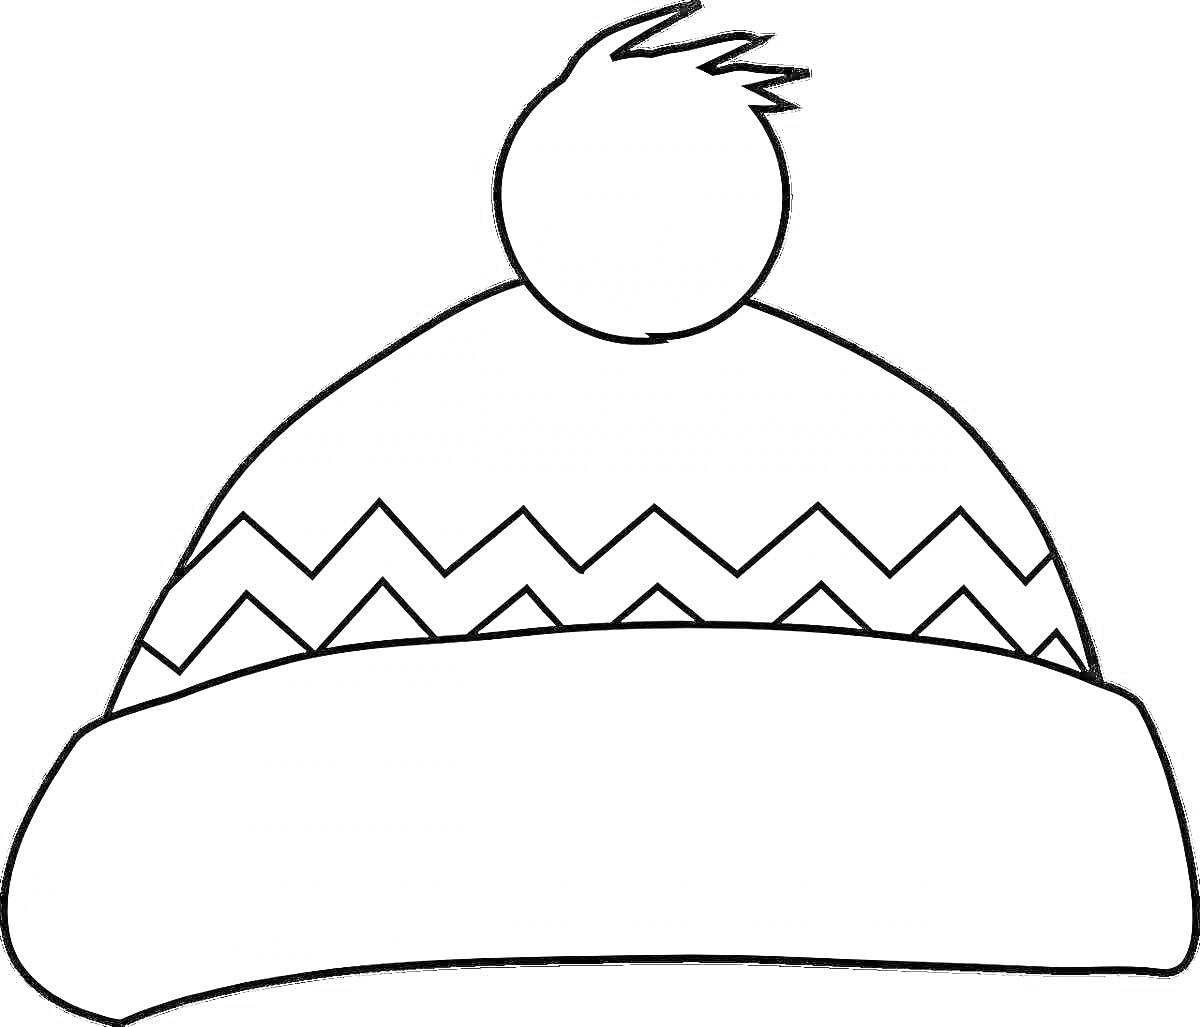 Раскраска зимняя шапка с помпоном и зигзагообразным узором